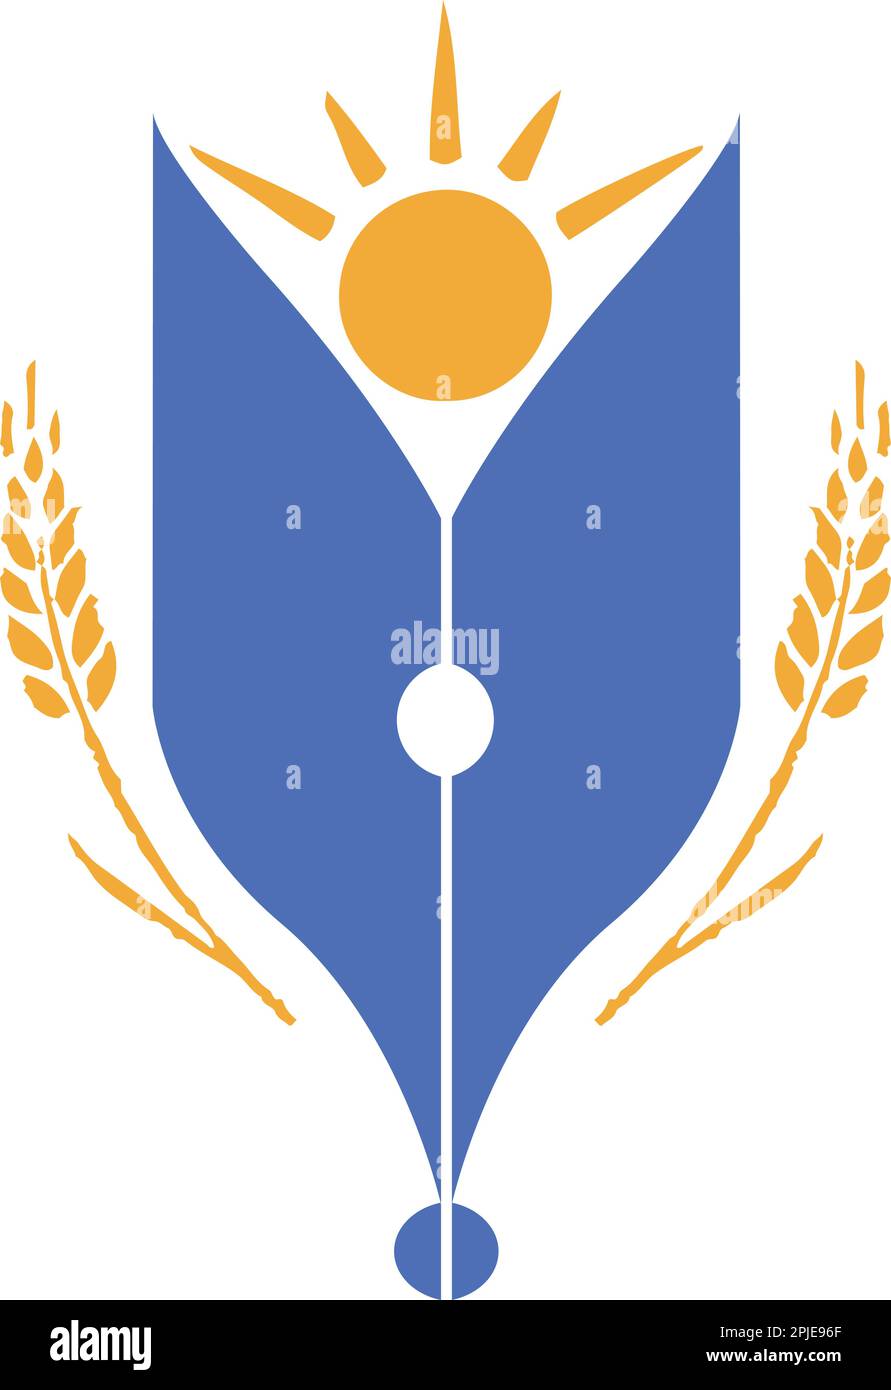 Education Institute, School, College, University Logo design Stock Vector